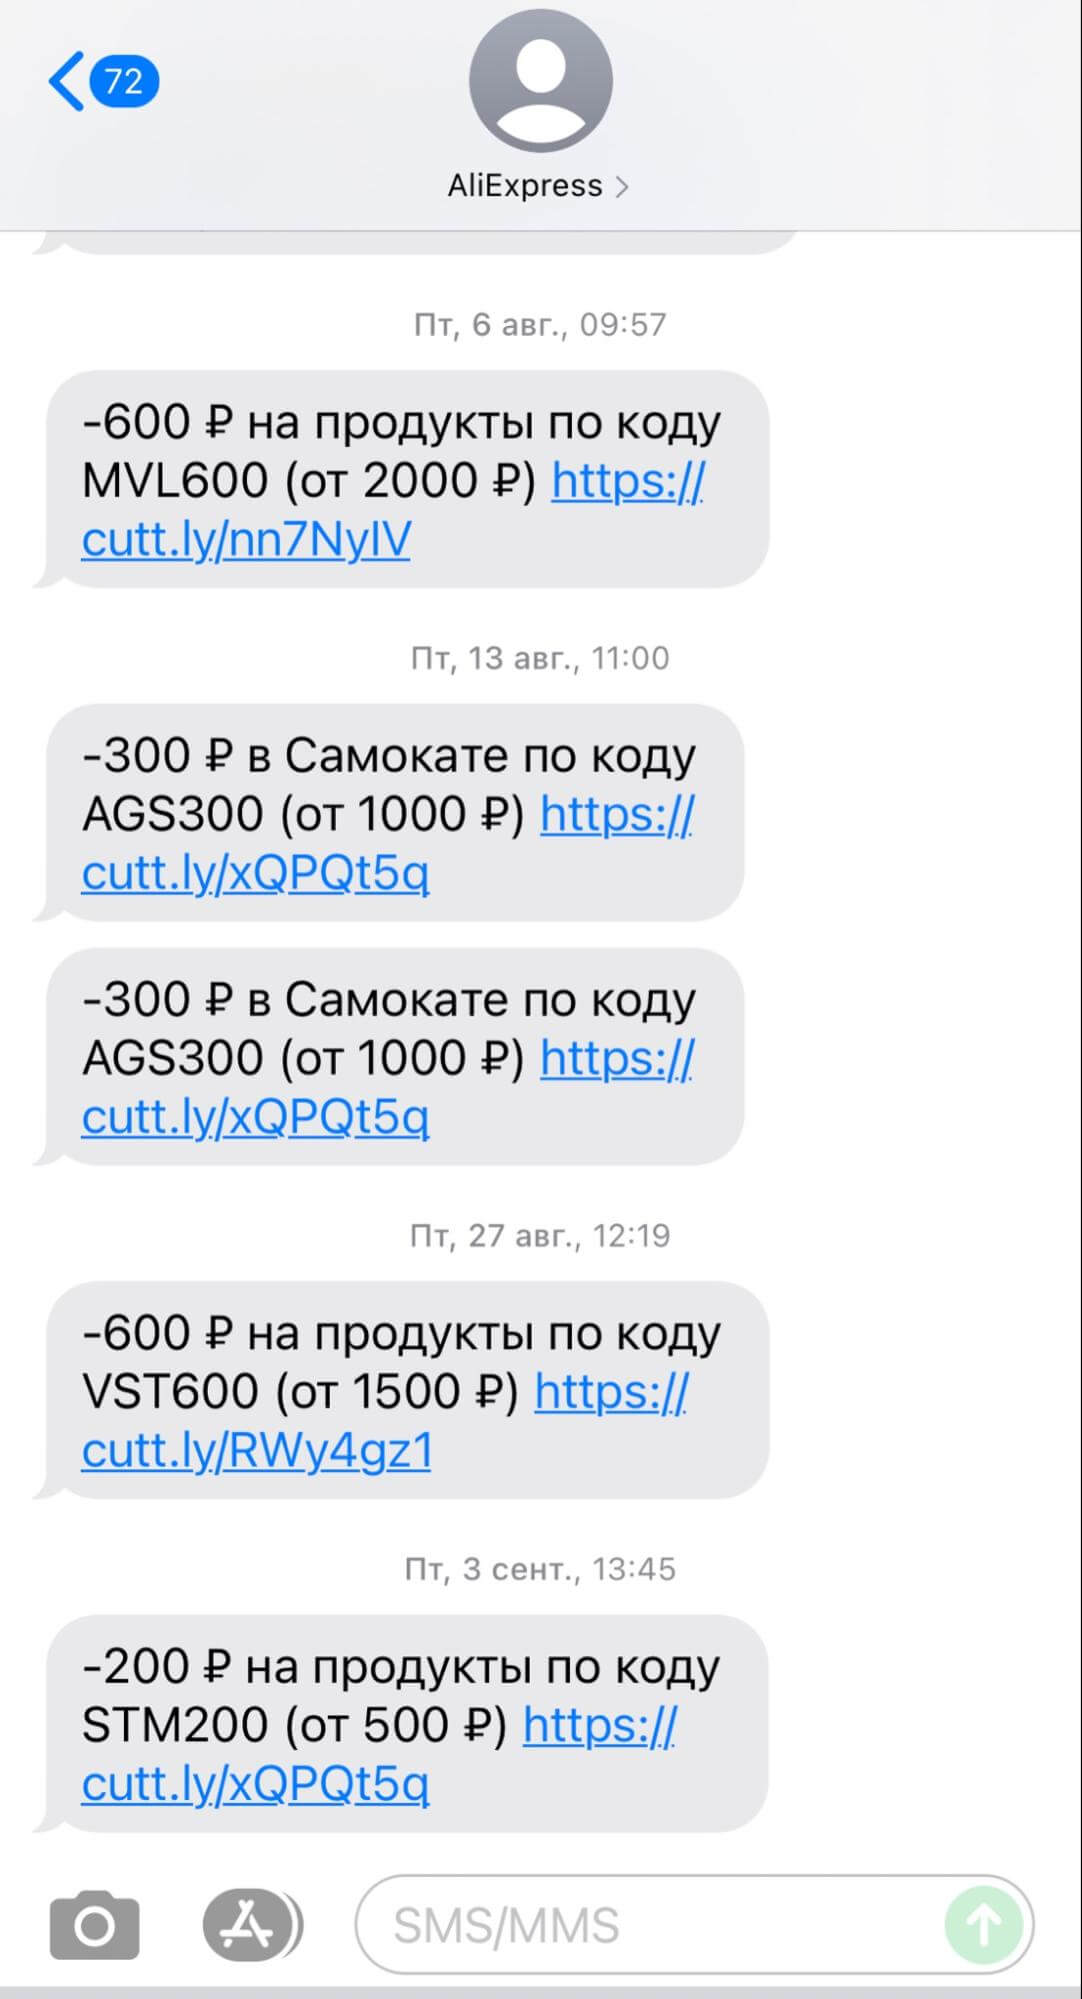 AliExpress с помощью смс-рассылки мотивирует пользователя совершить покупку